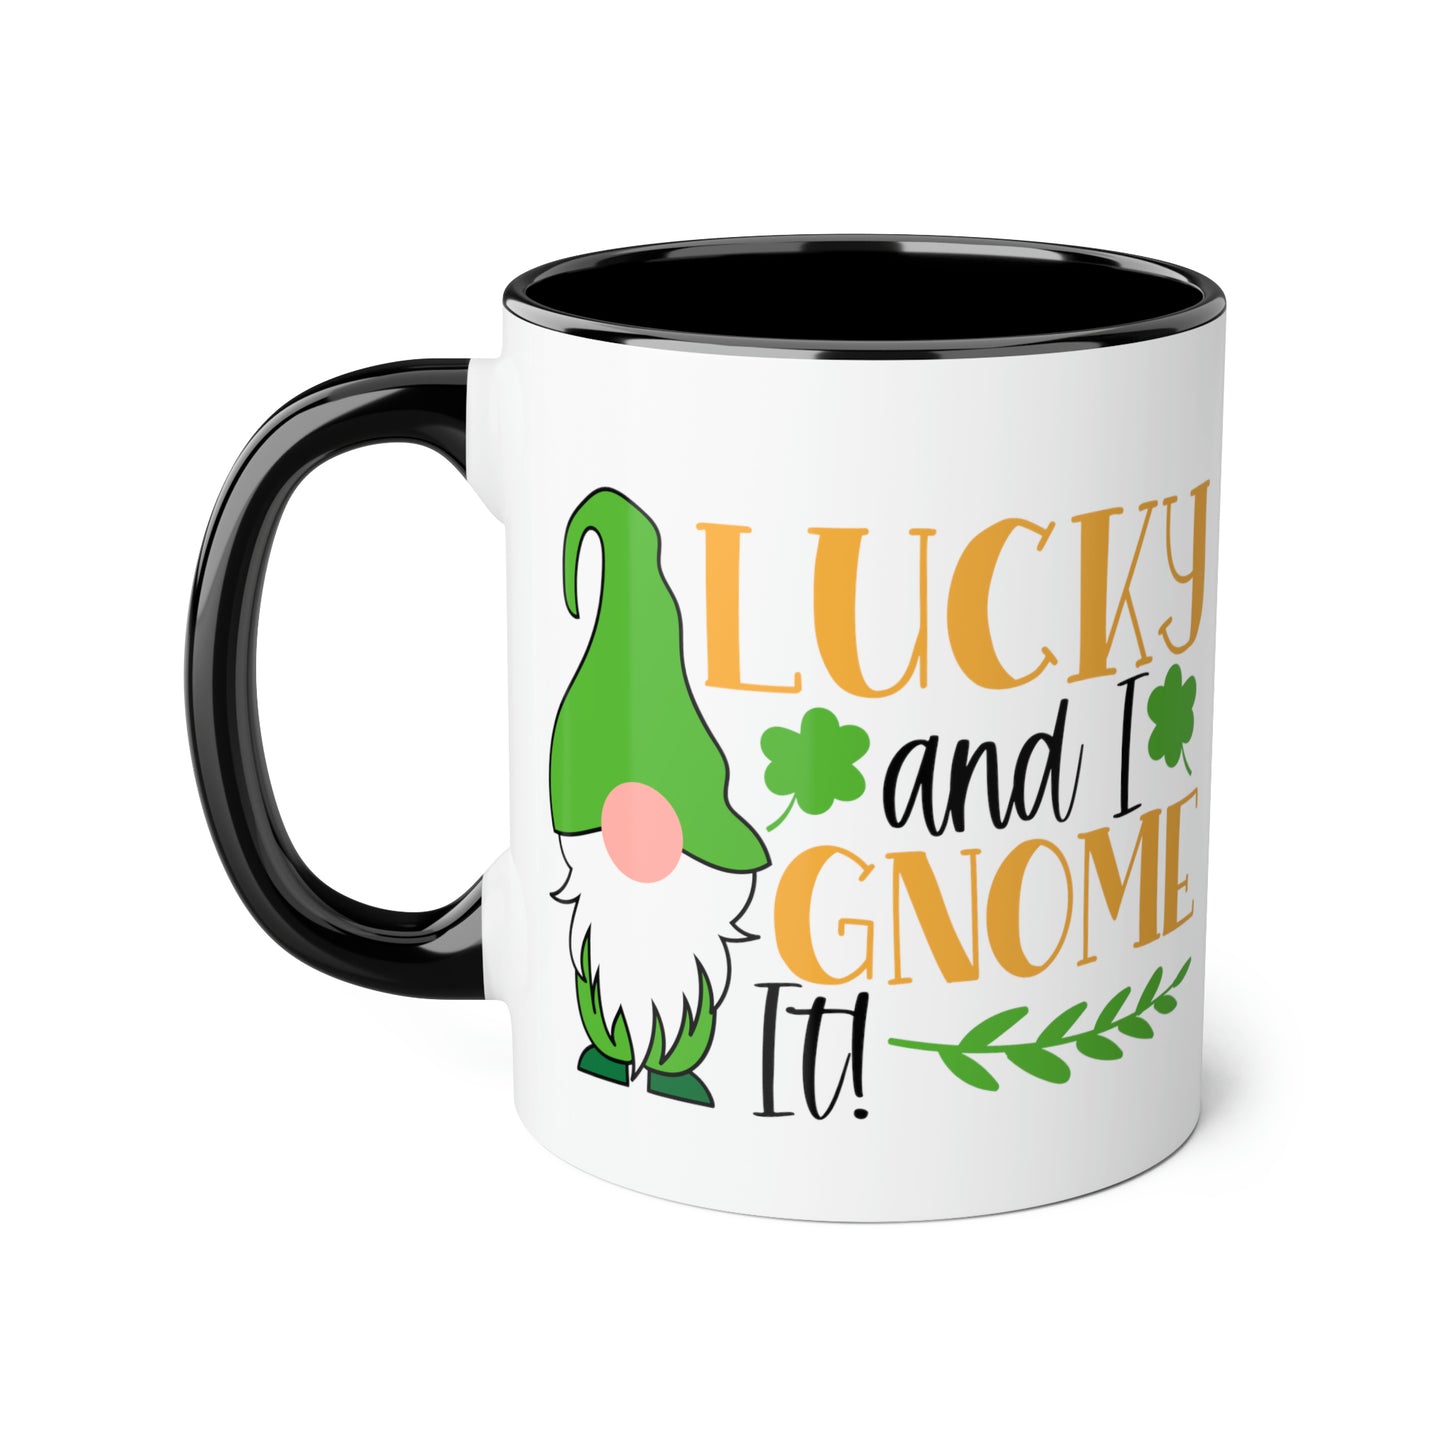 Lucky and I Gnome It 11oz Mug